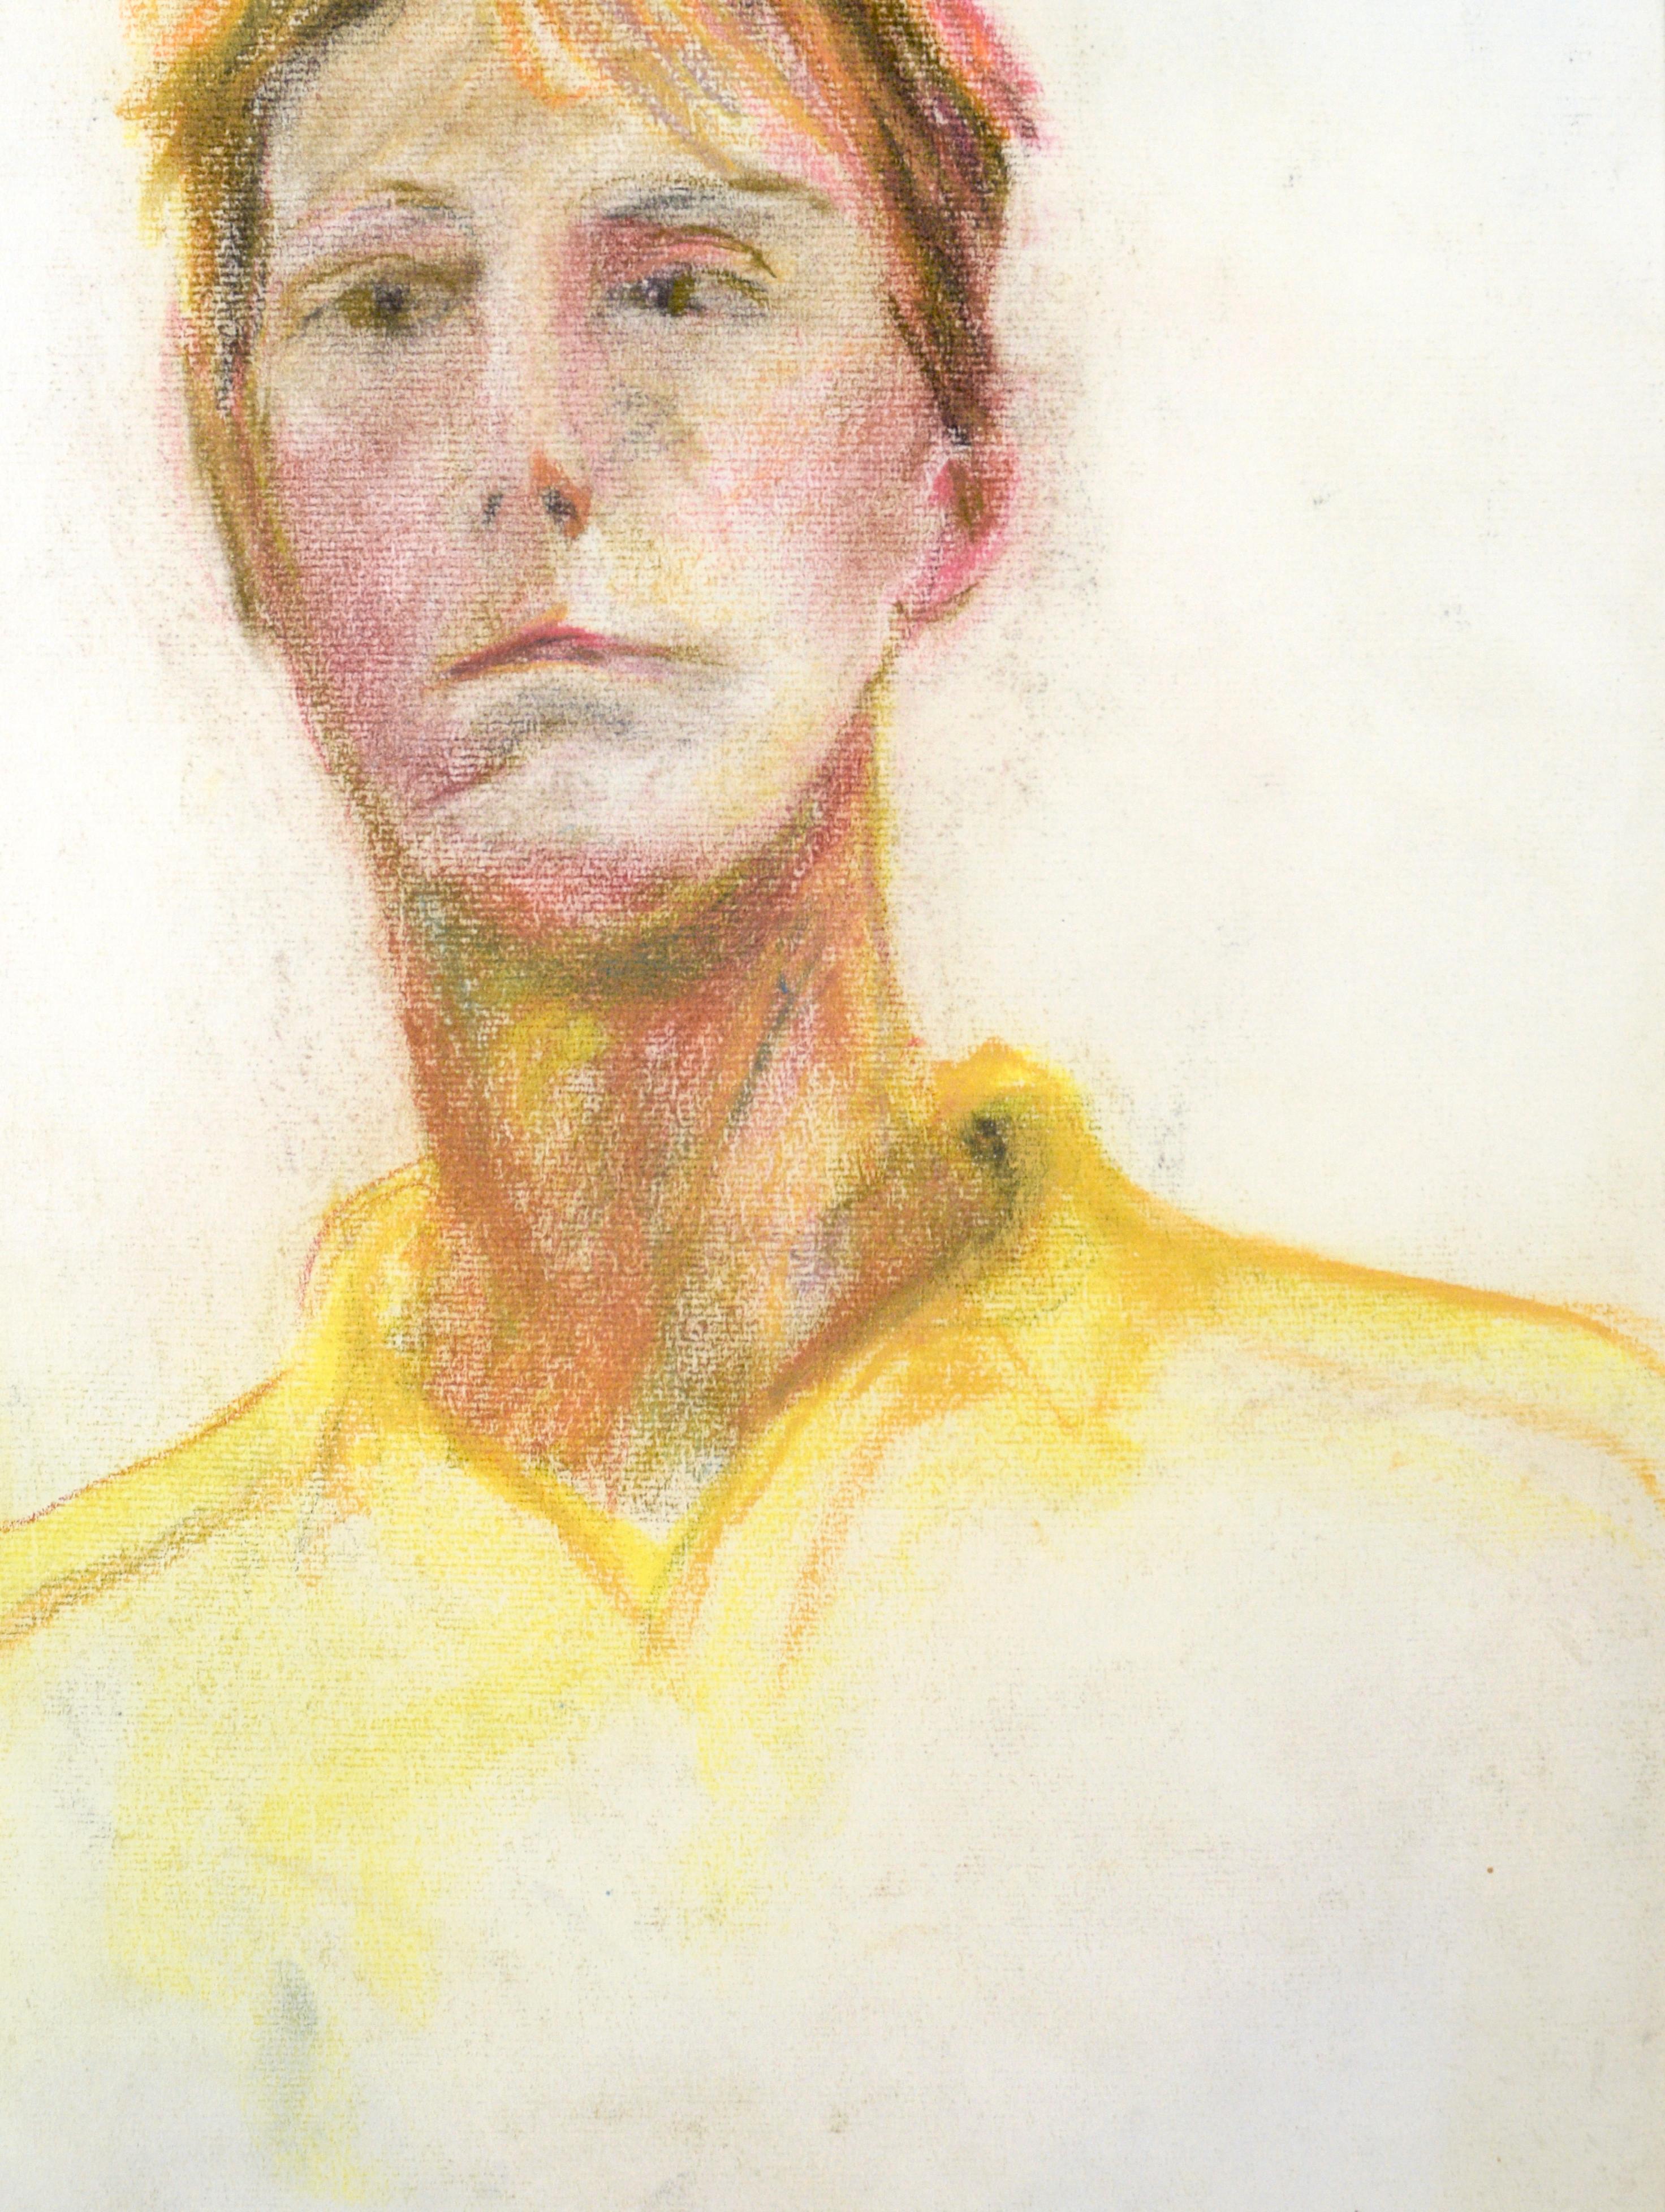 Self-Portrait des Künstlers in Pastell auf Papier

Leuchtendes Gelb und Ocker machen dieses Self-Portrait in Kreidepastellkreide von Michael William Eggleston (Amerikaner, 20. Jahrhundert) aus. 

Unsigniert, aber mit einer Sammlung von Werken des